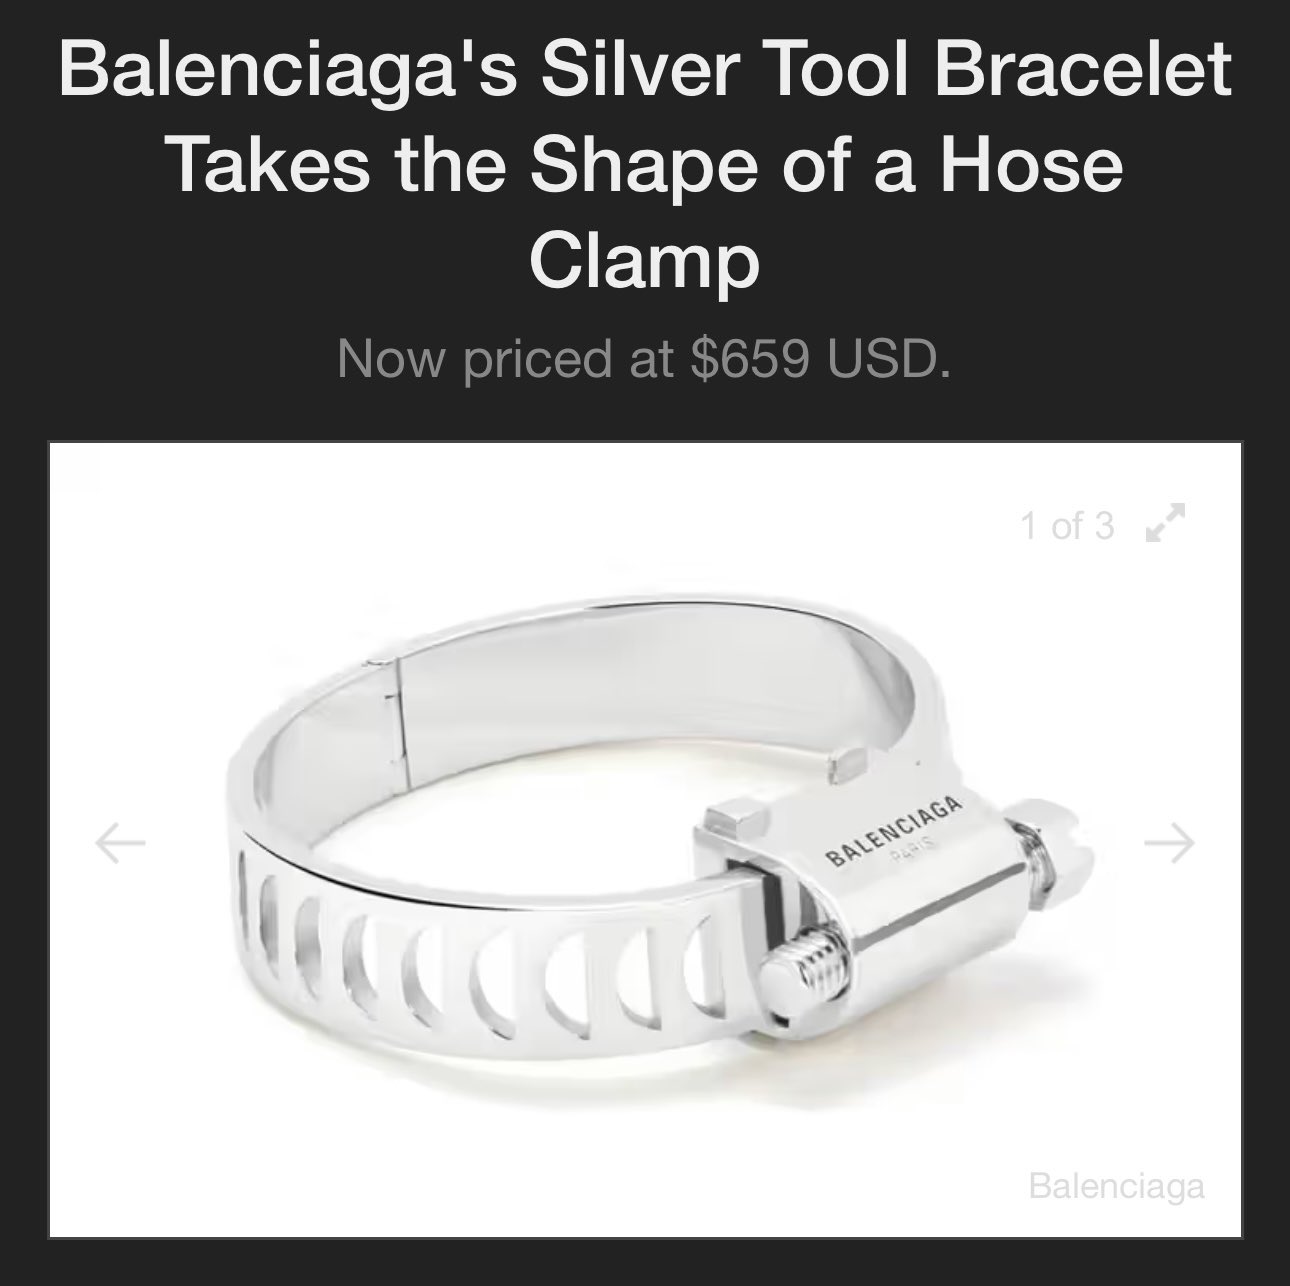 Balenciaga Silver Tool Bracelet Release